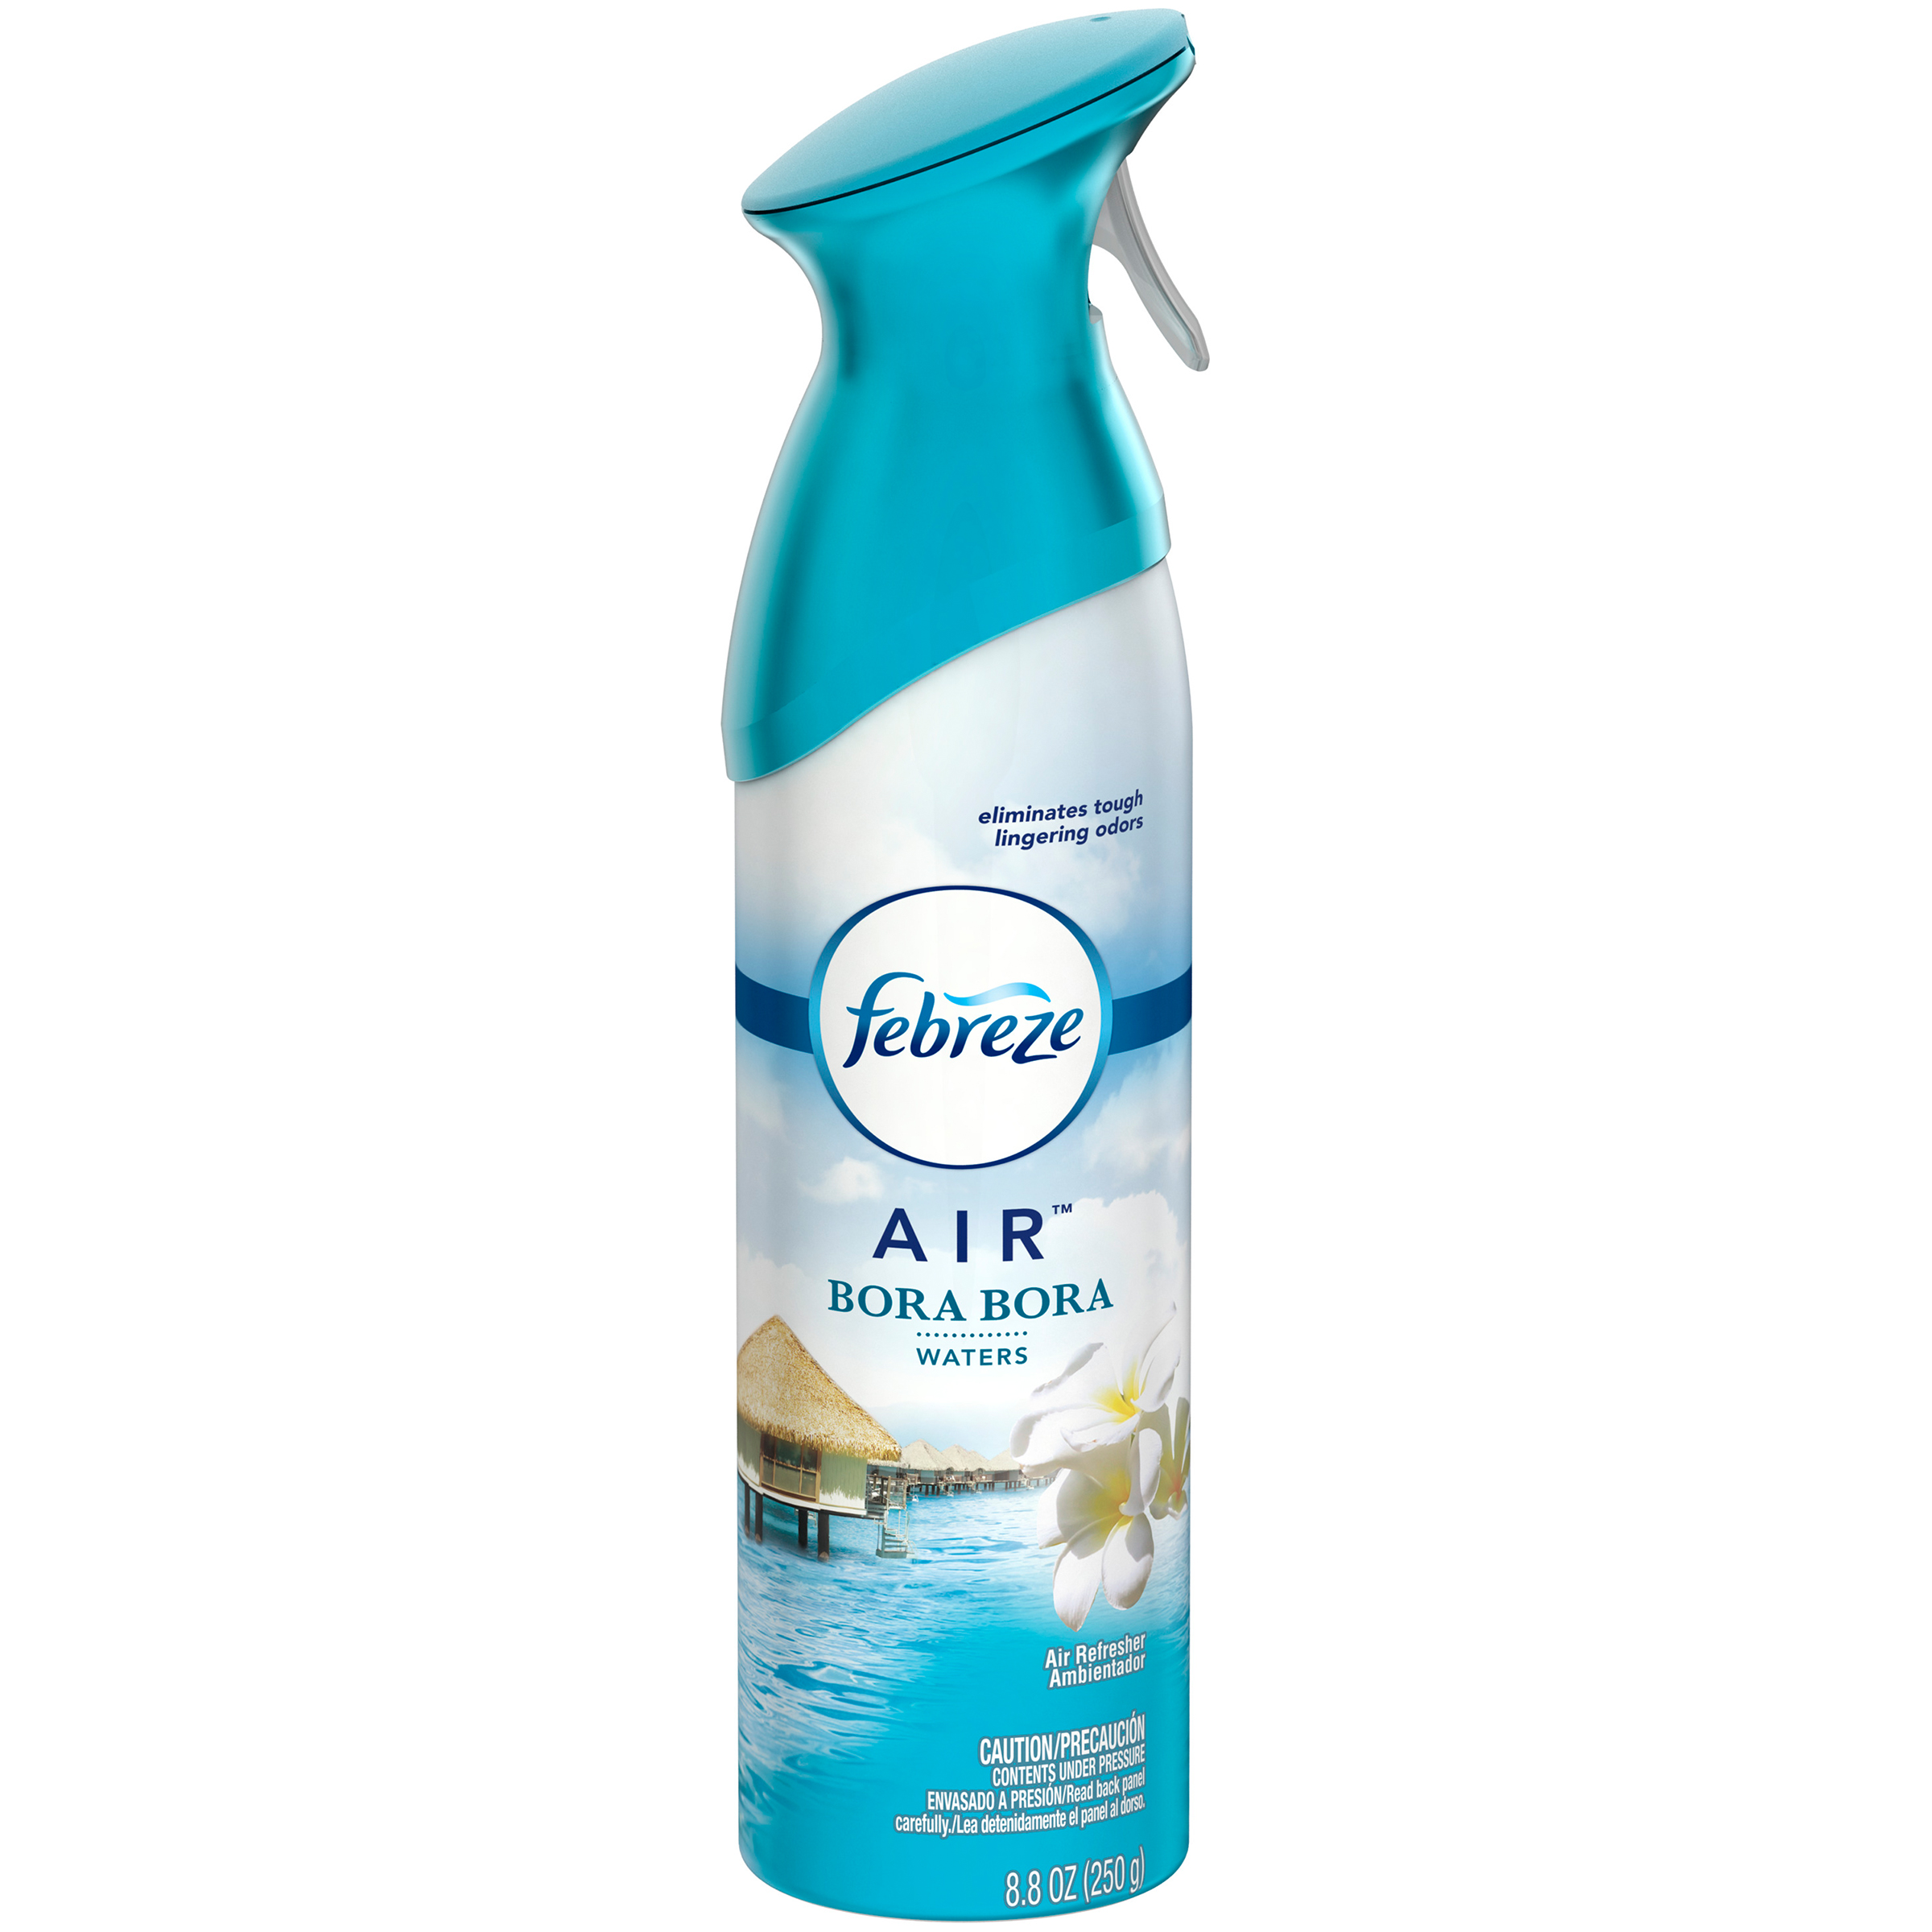 Febreze  AIR Effects Air Freshener Bora Bora Waters (1 Count, 8.8 oz)